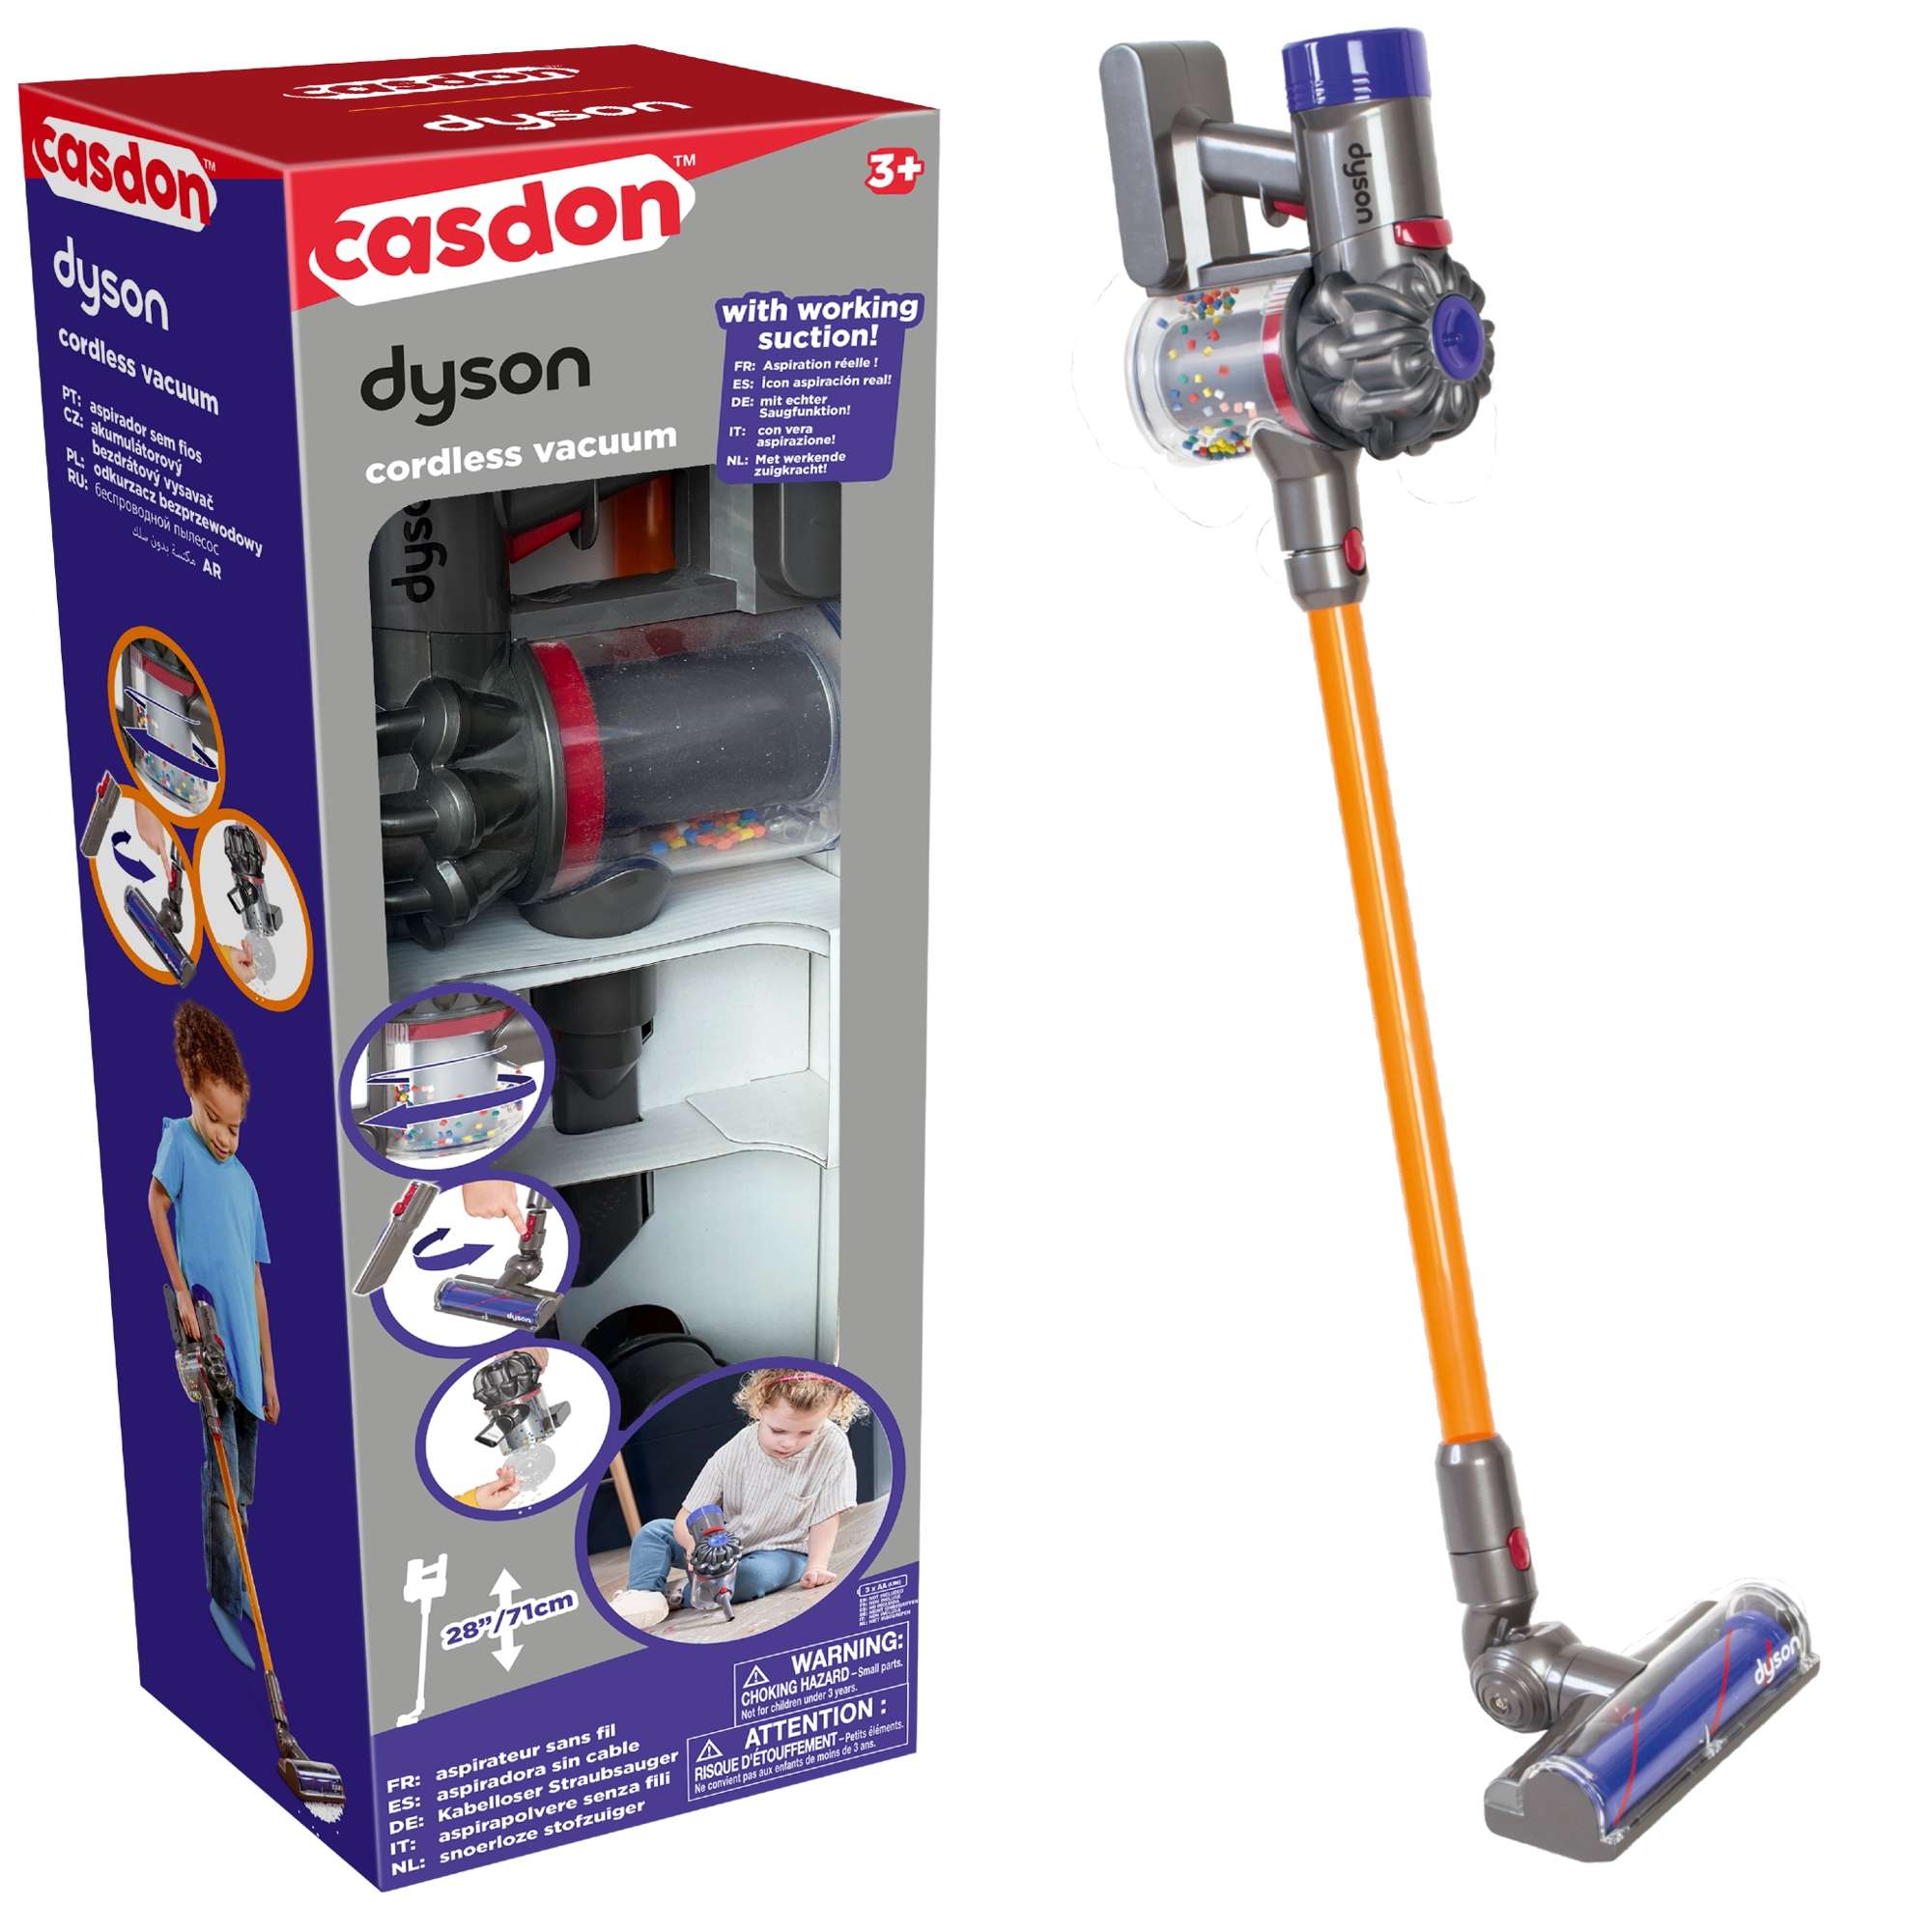 interaktive Dyson Spielzeug Upright Vakuum Staubsaug Cordless Kinder für Casdon